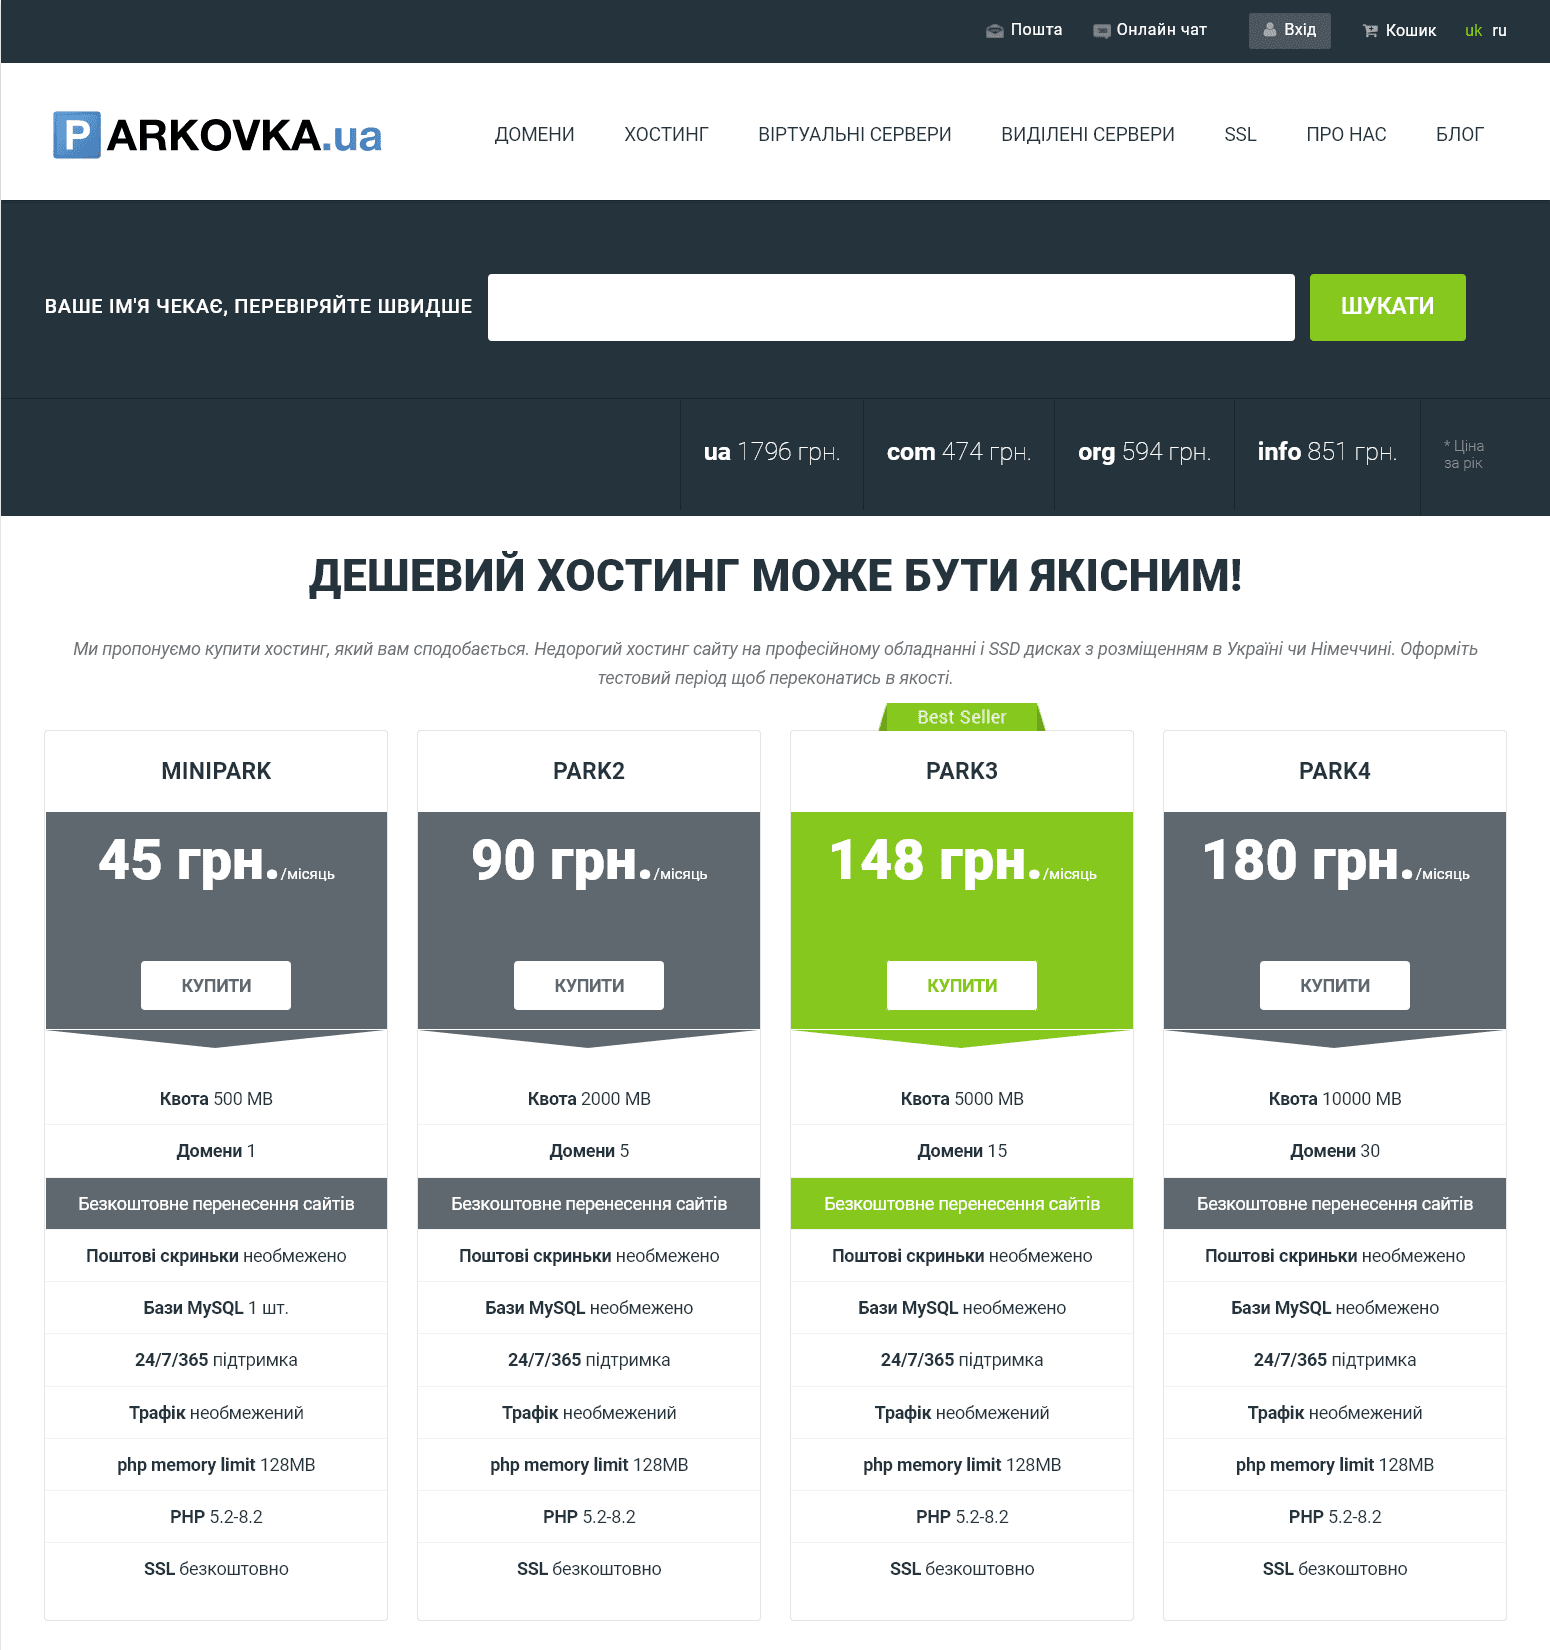 Головна сторінка сайту Parkovka